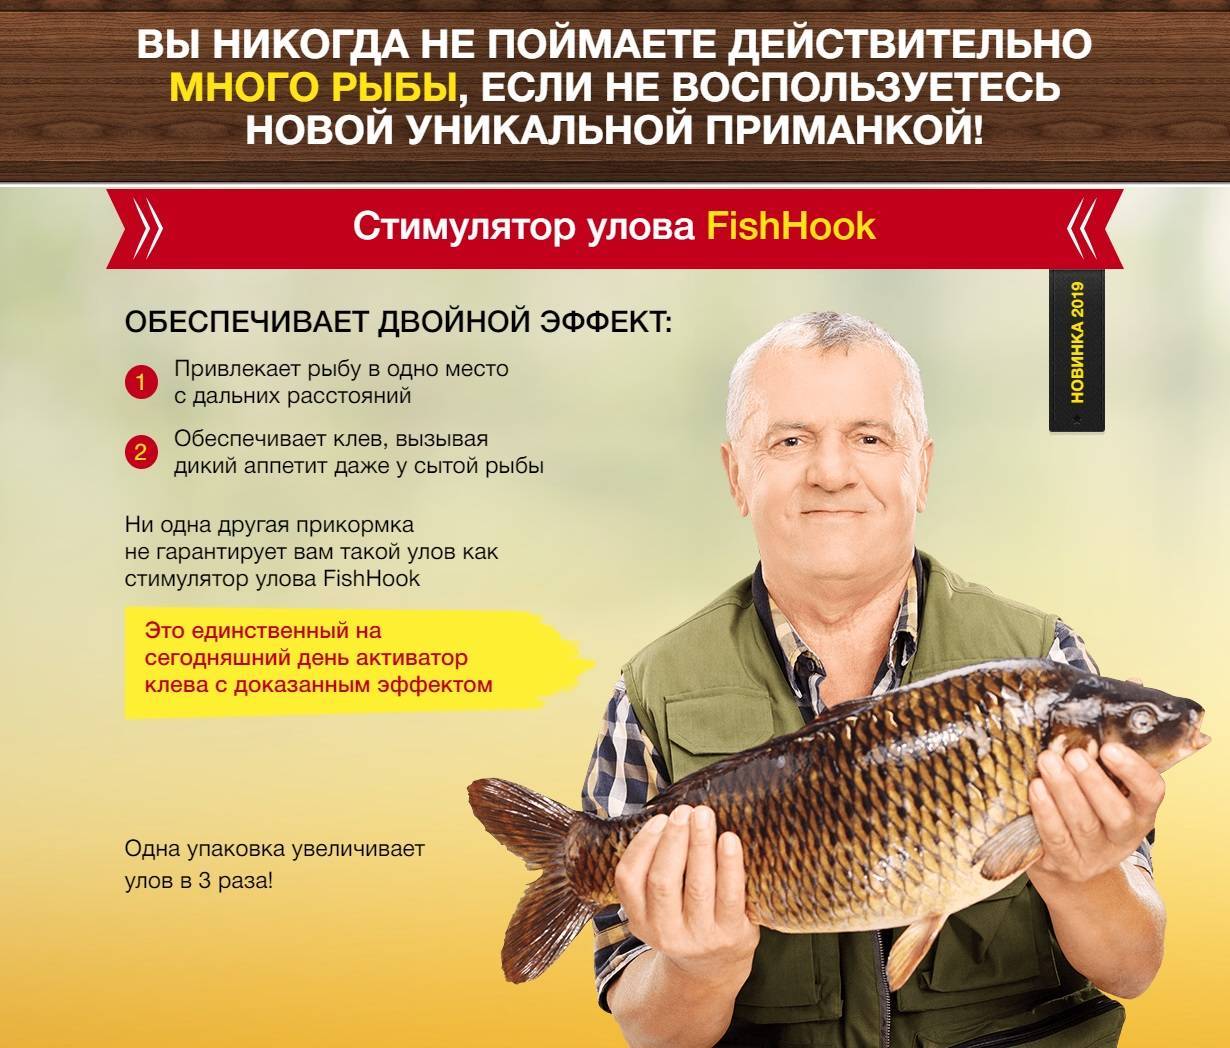 Активатор клева fishhungry (голодная рыба): отзывы, видео